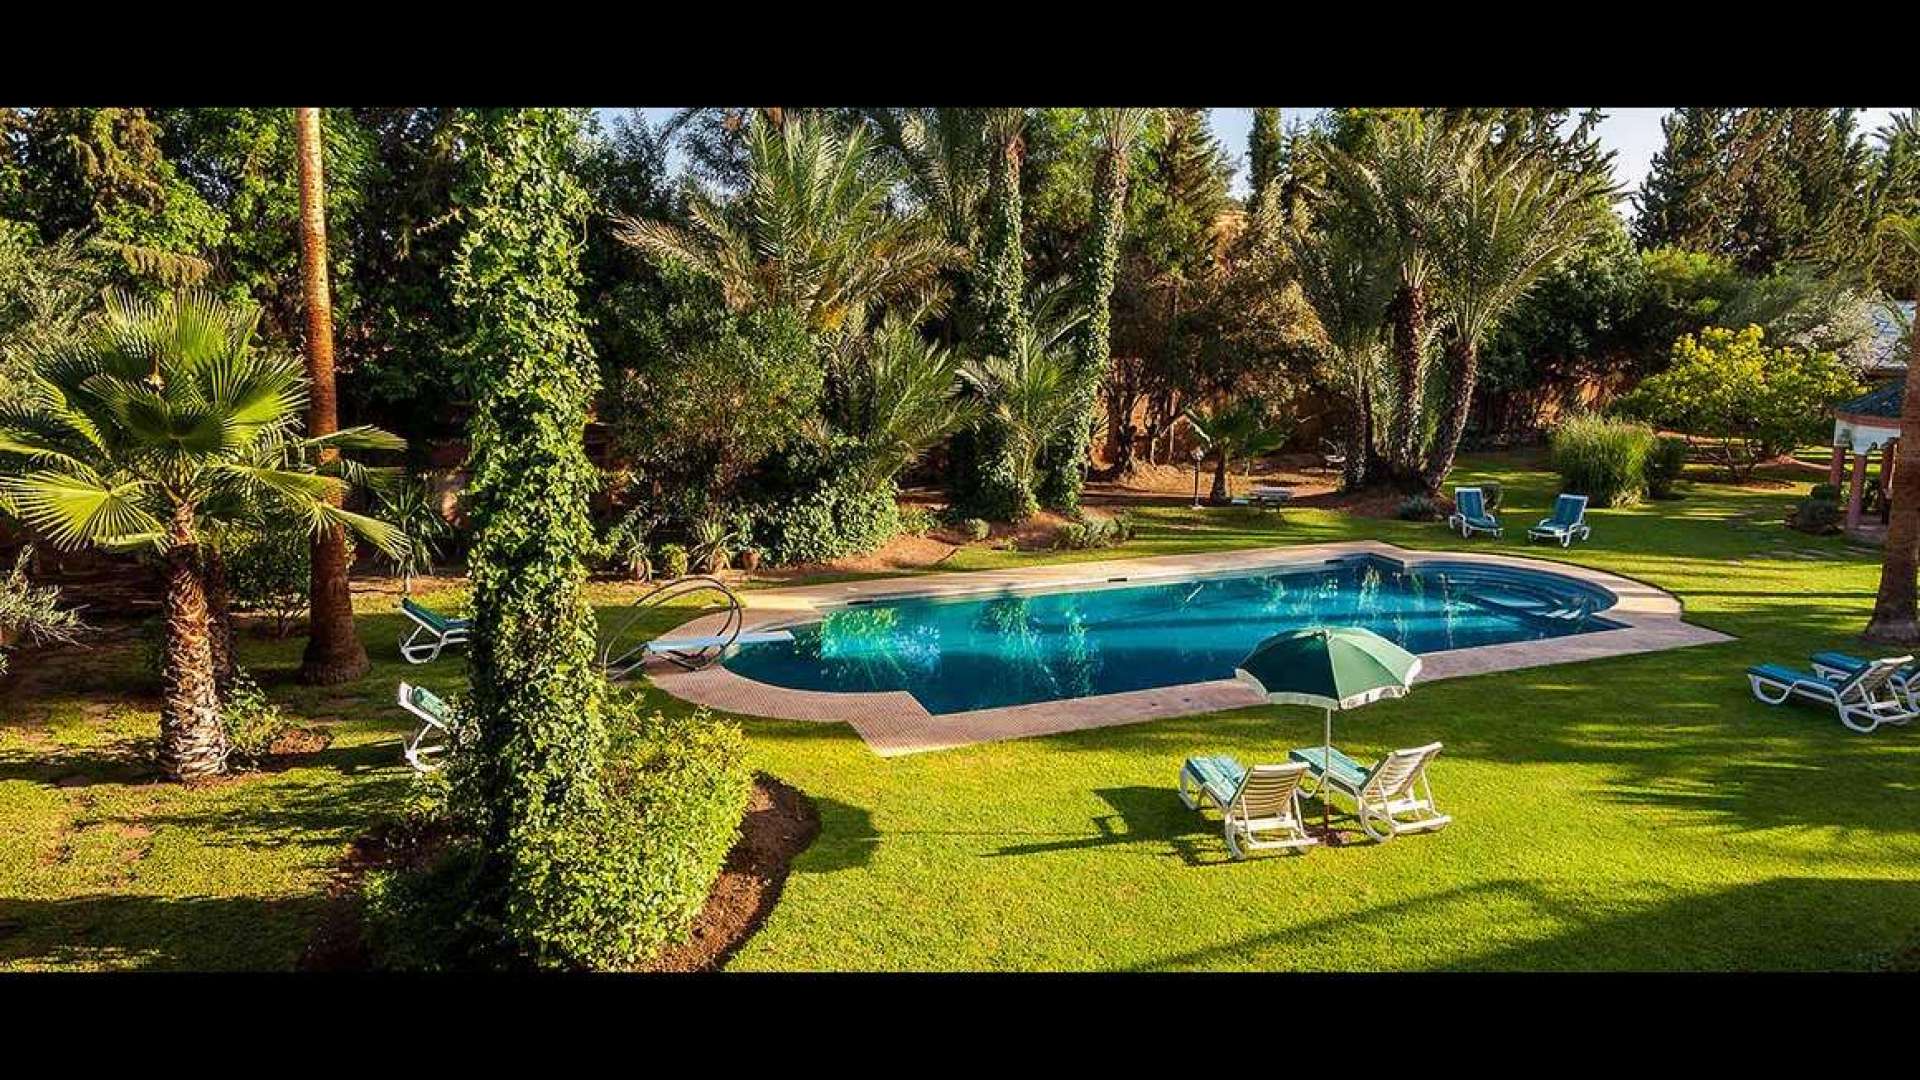 Location de vacances,Villa,Propriété de 18 chambres sur 1 hectare de jardin dans la Palmeraie,Marrakech,Palmeraie